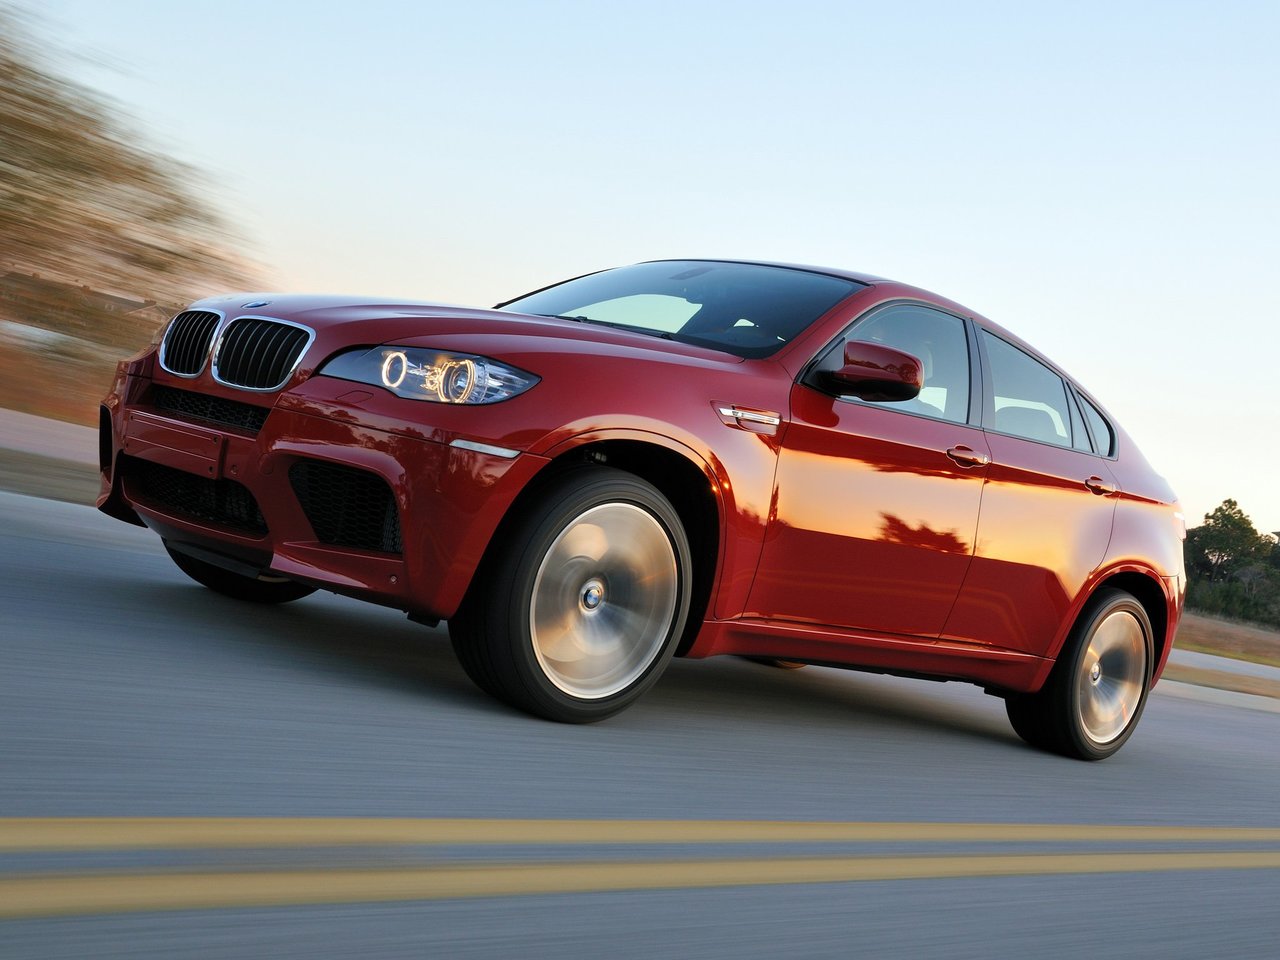 Расход газа одной комплектации внедорожника пять дверей BMW X6 M. Разница стоимости заправки газом и бензином. Автономный пробег до и после установки ГБО.